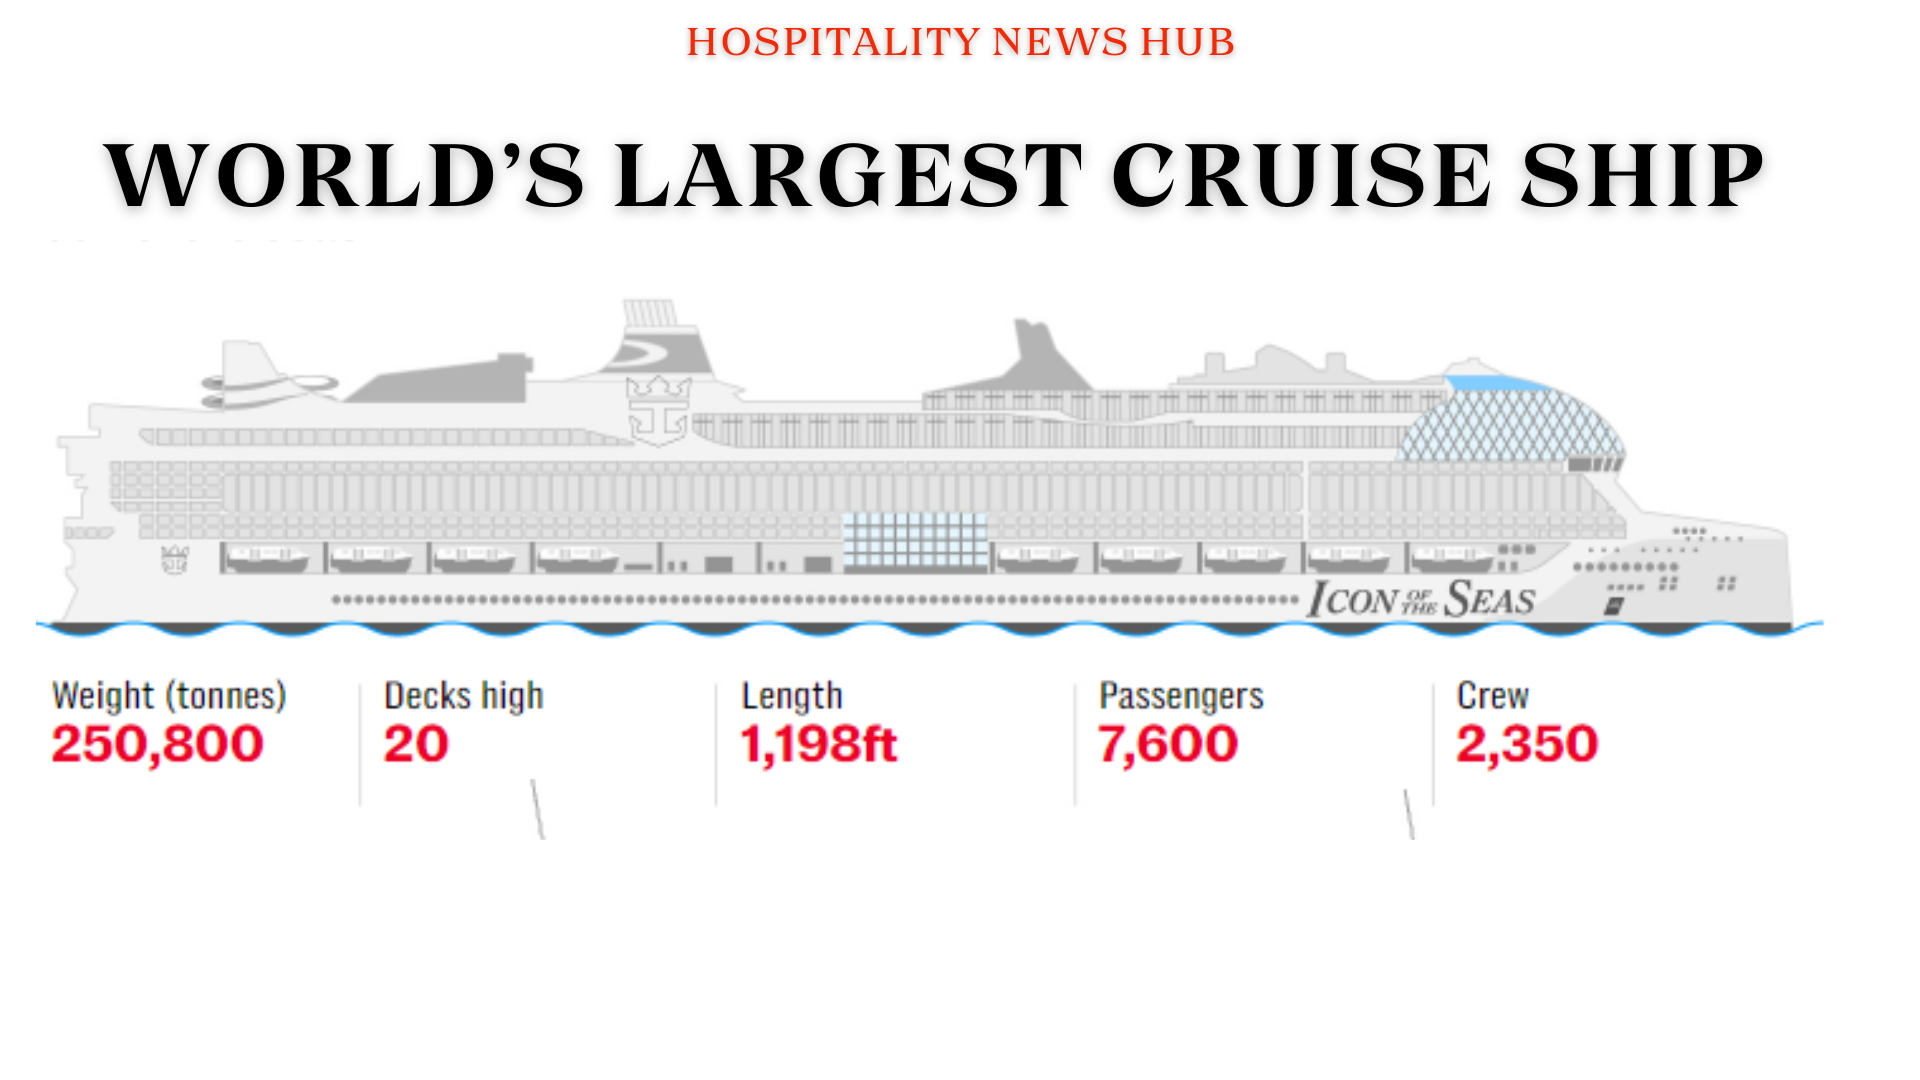 World's largest Cruise ship